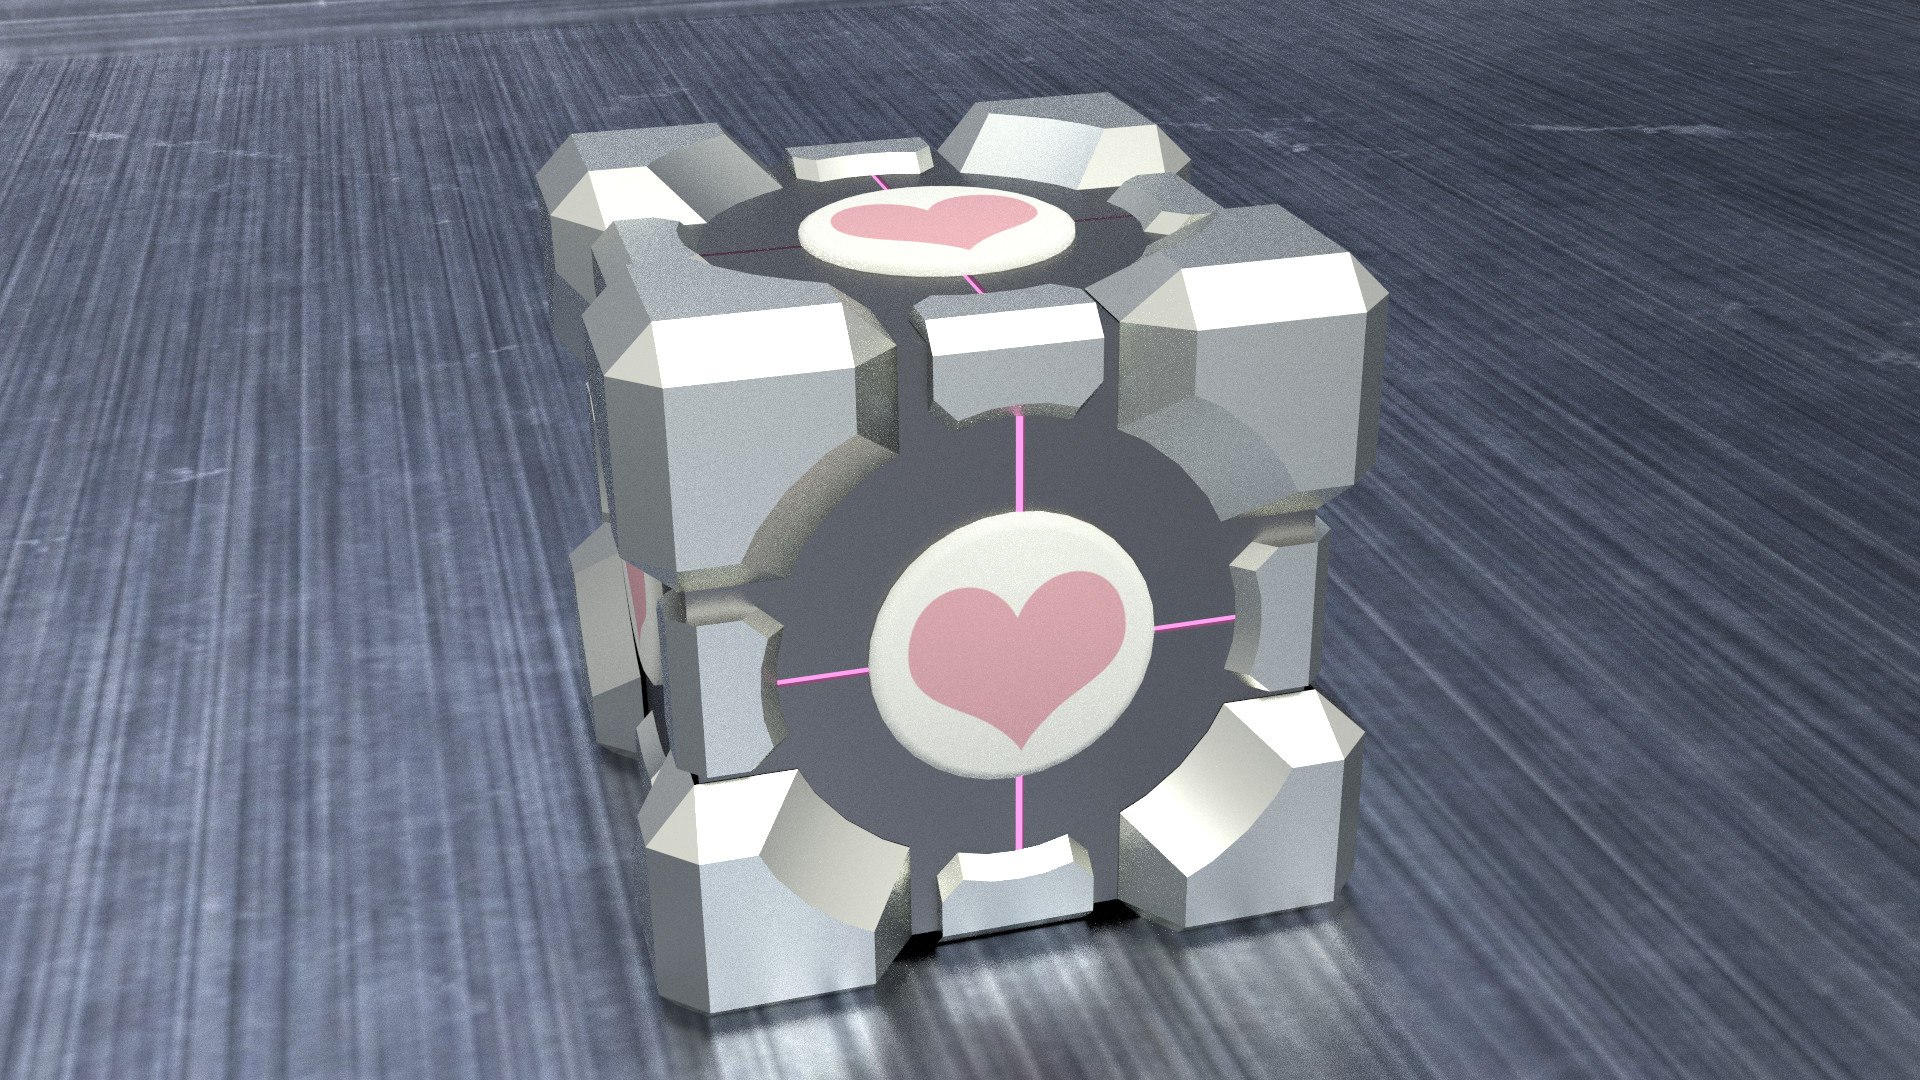 Portal cube. Companion Cube. Hover Cube Companion. Куб из Portal 2. Portal Companion Cube.